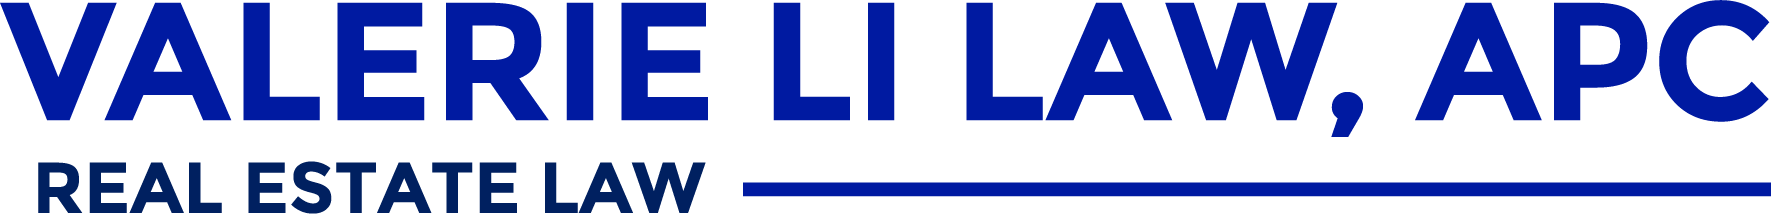 Valerie Li Law, APC mobile logo